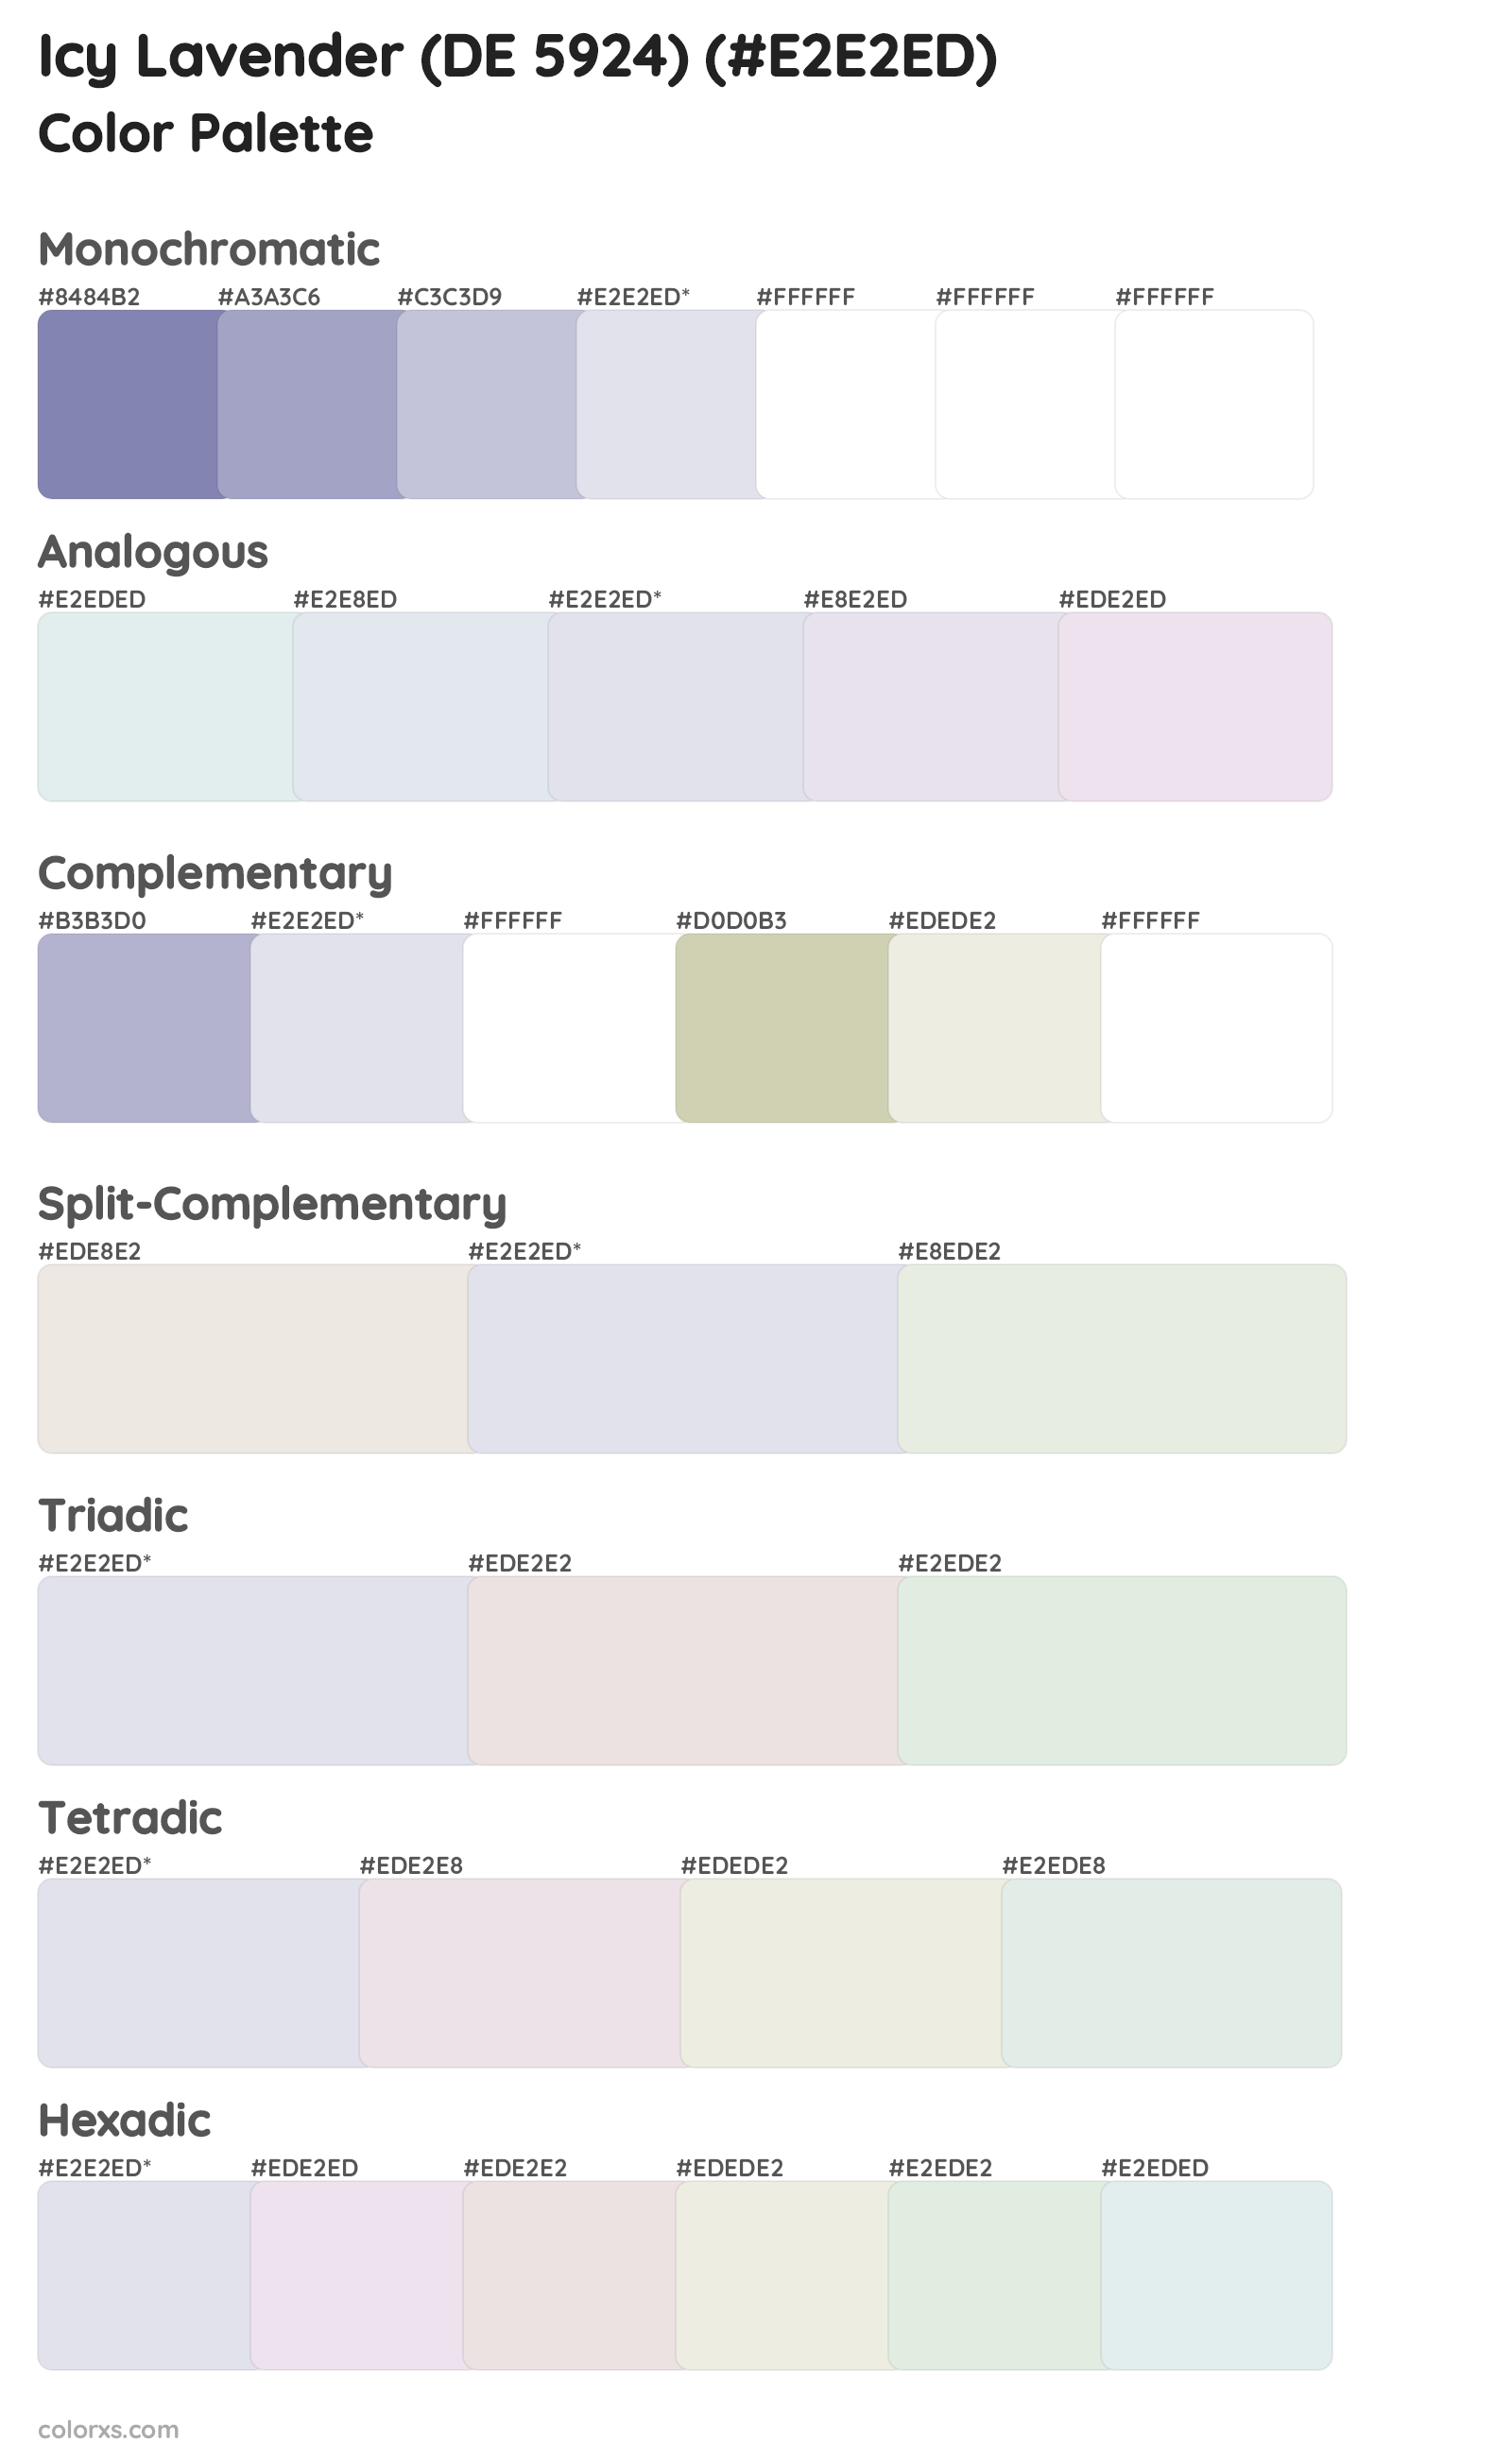 Icy Lavender (DE 5924) Color Scheme Palettes